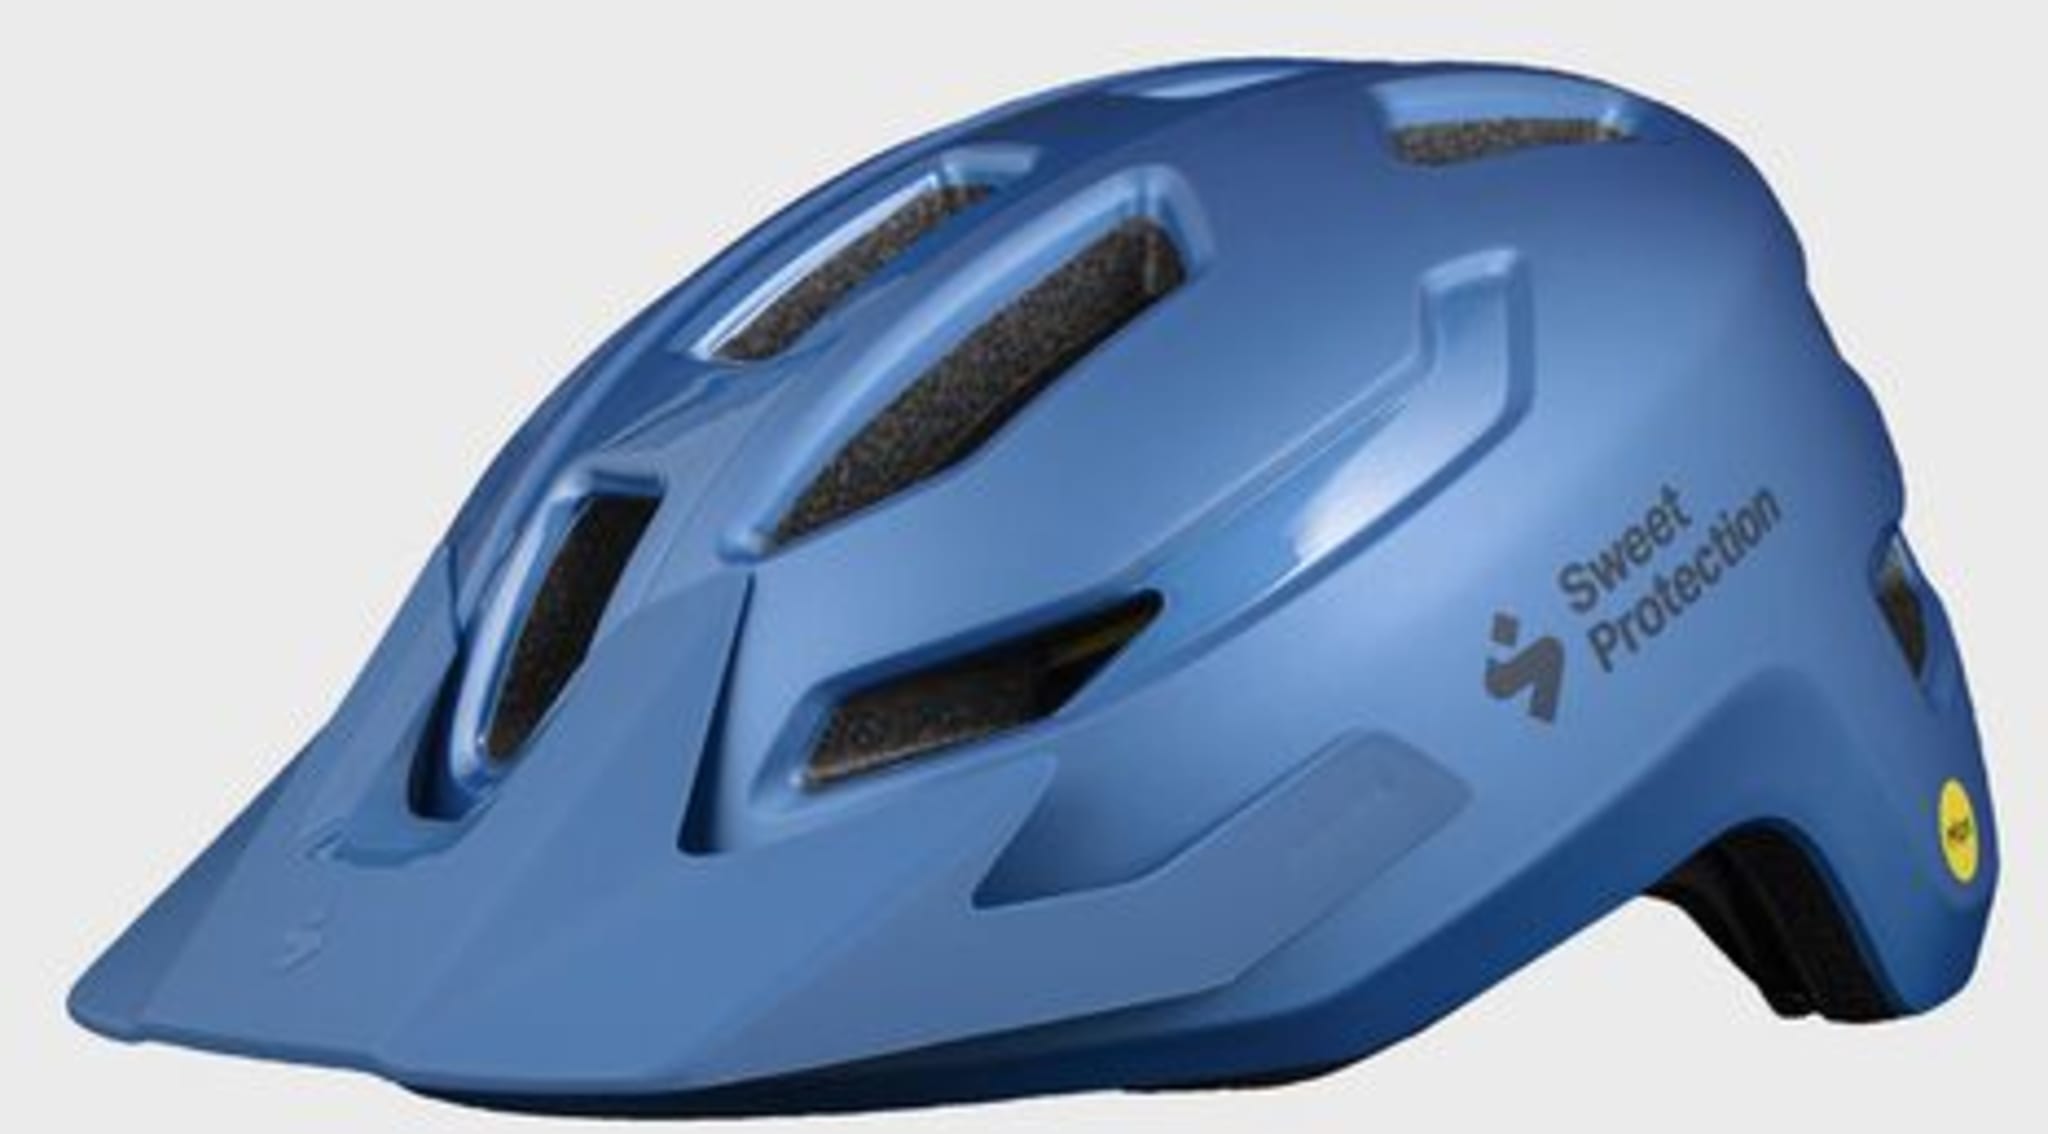 Ripper MIPS-hjelmen er en terrengsykkelhjelm til en uslåelig pris